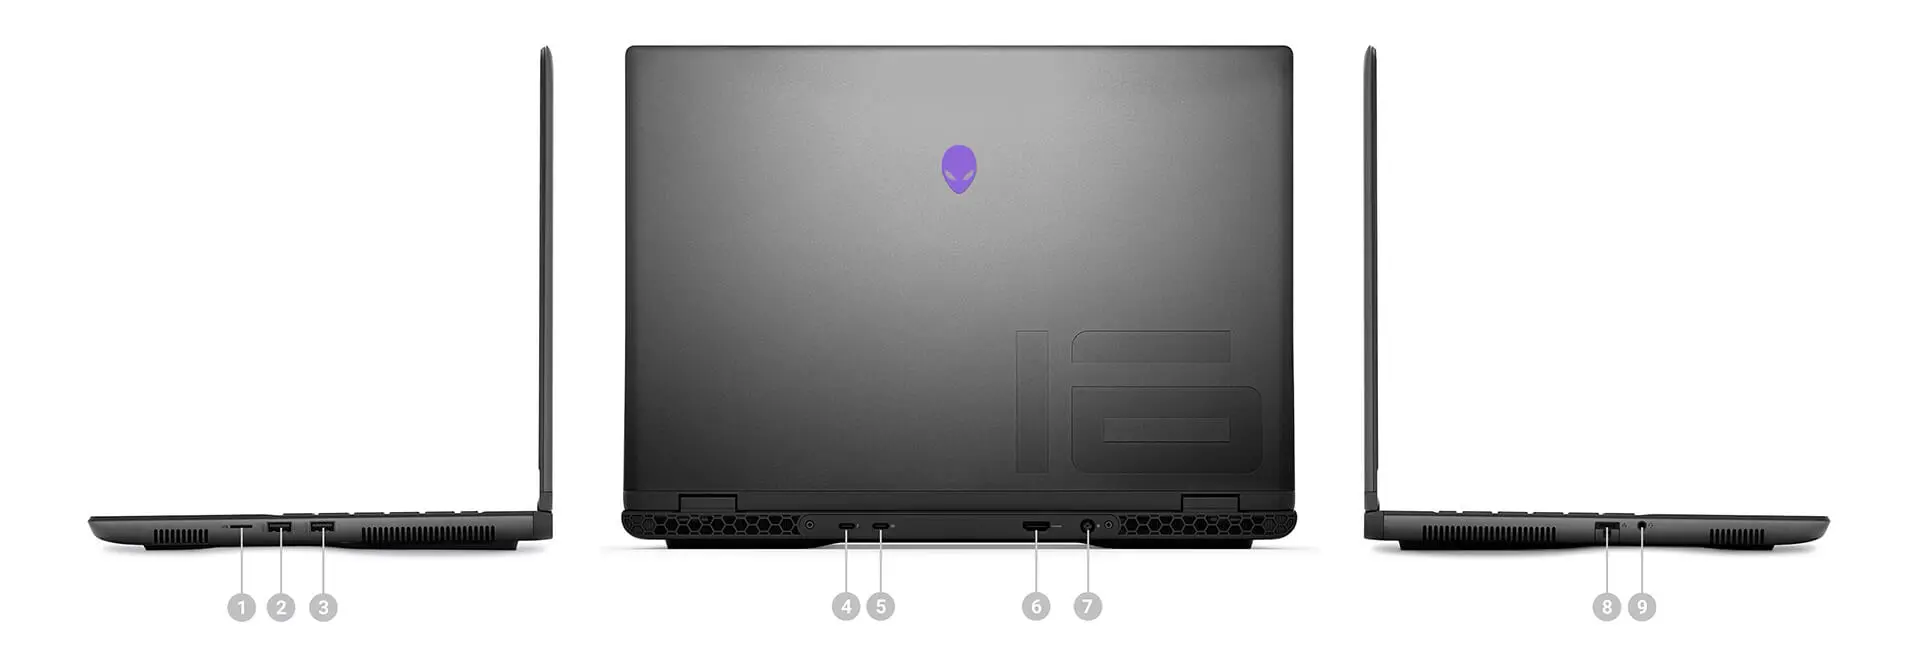 Alienware M16 R2 - Laptop Chơi Game Đỉnh Cao với Hiệu Năng Vượt Trội 24